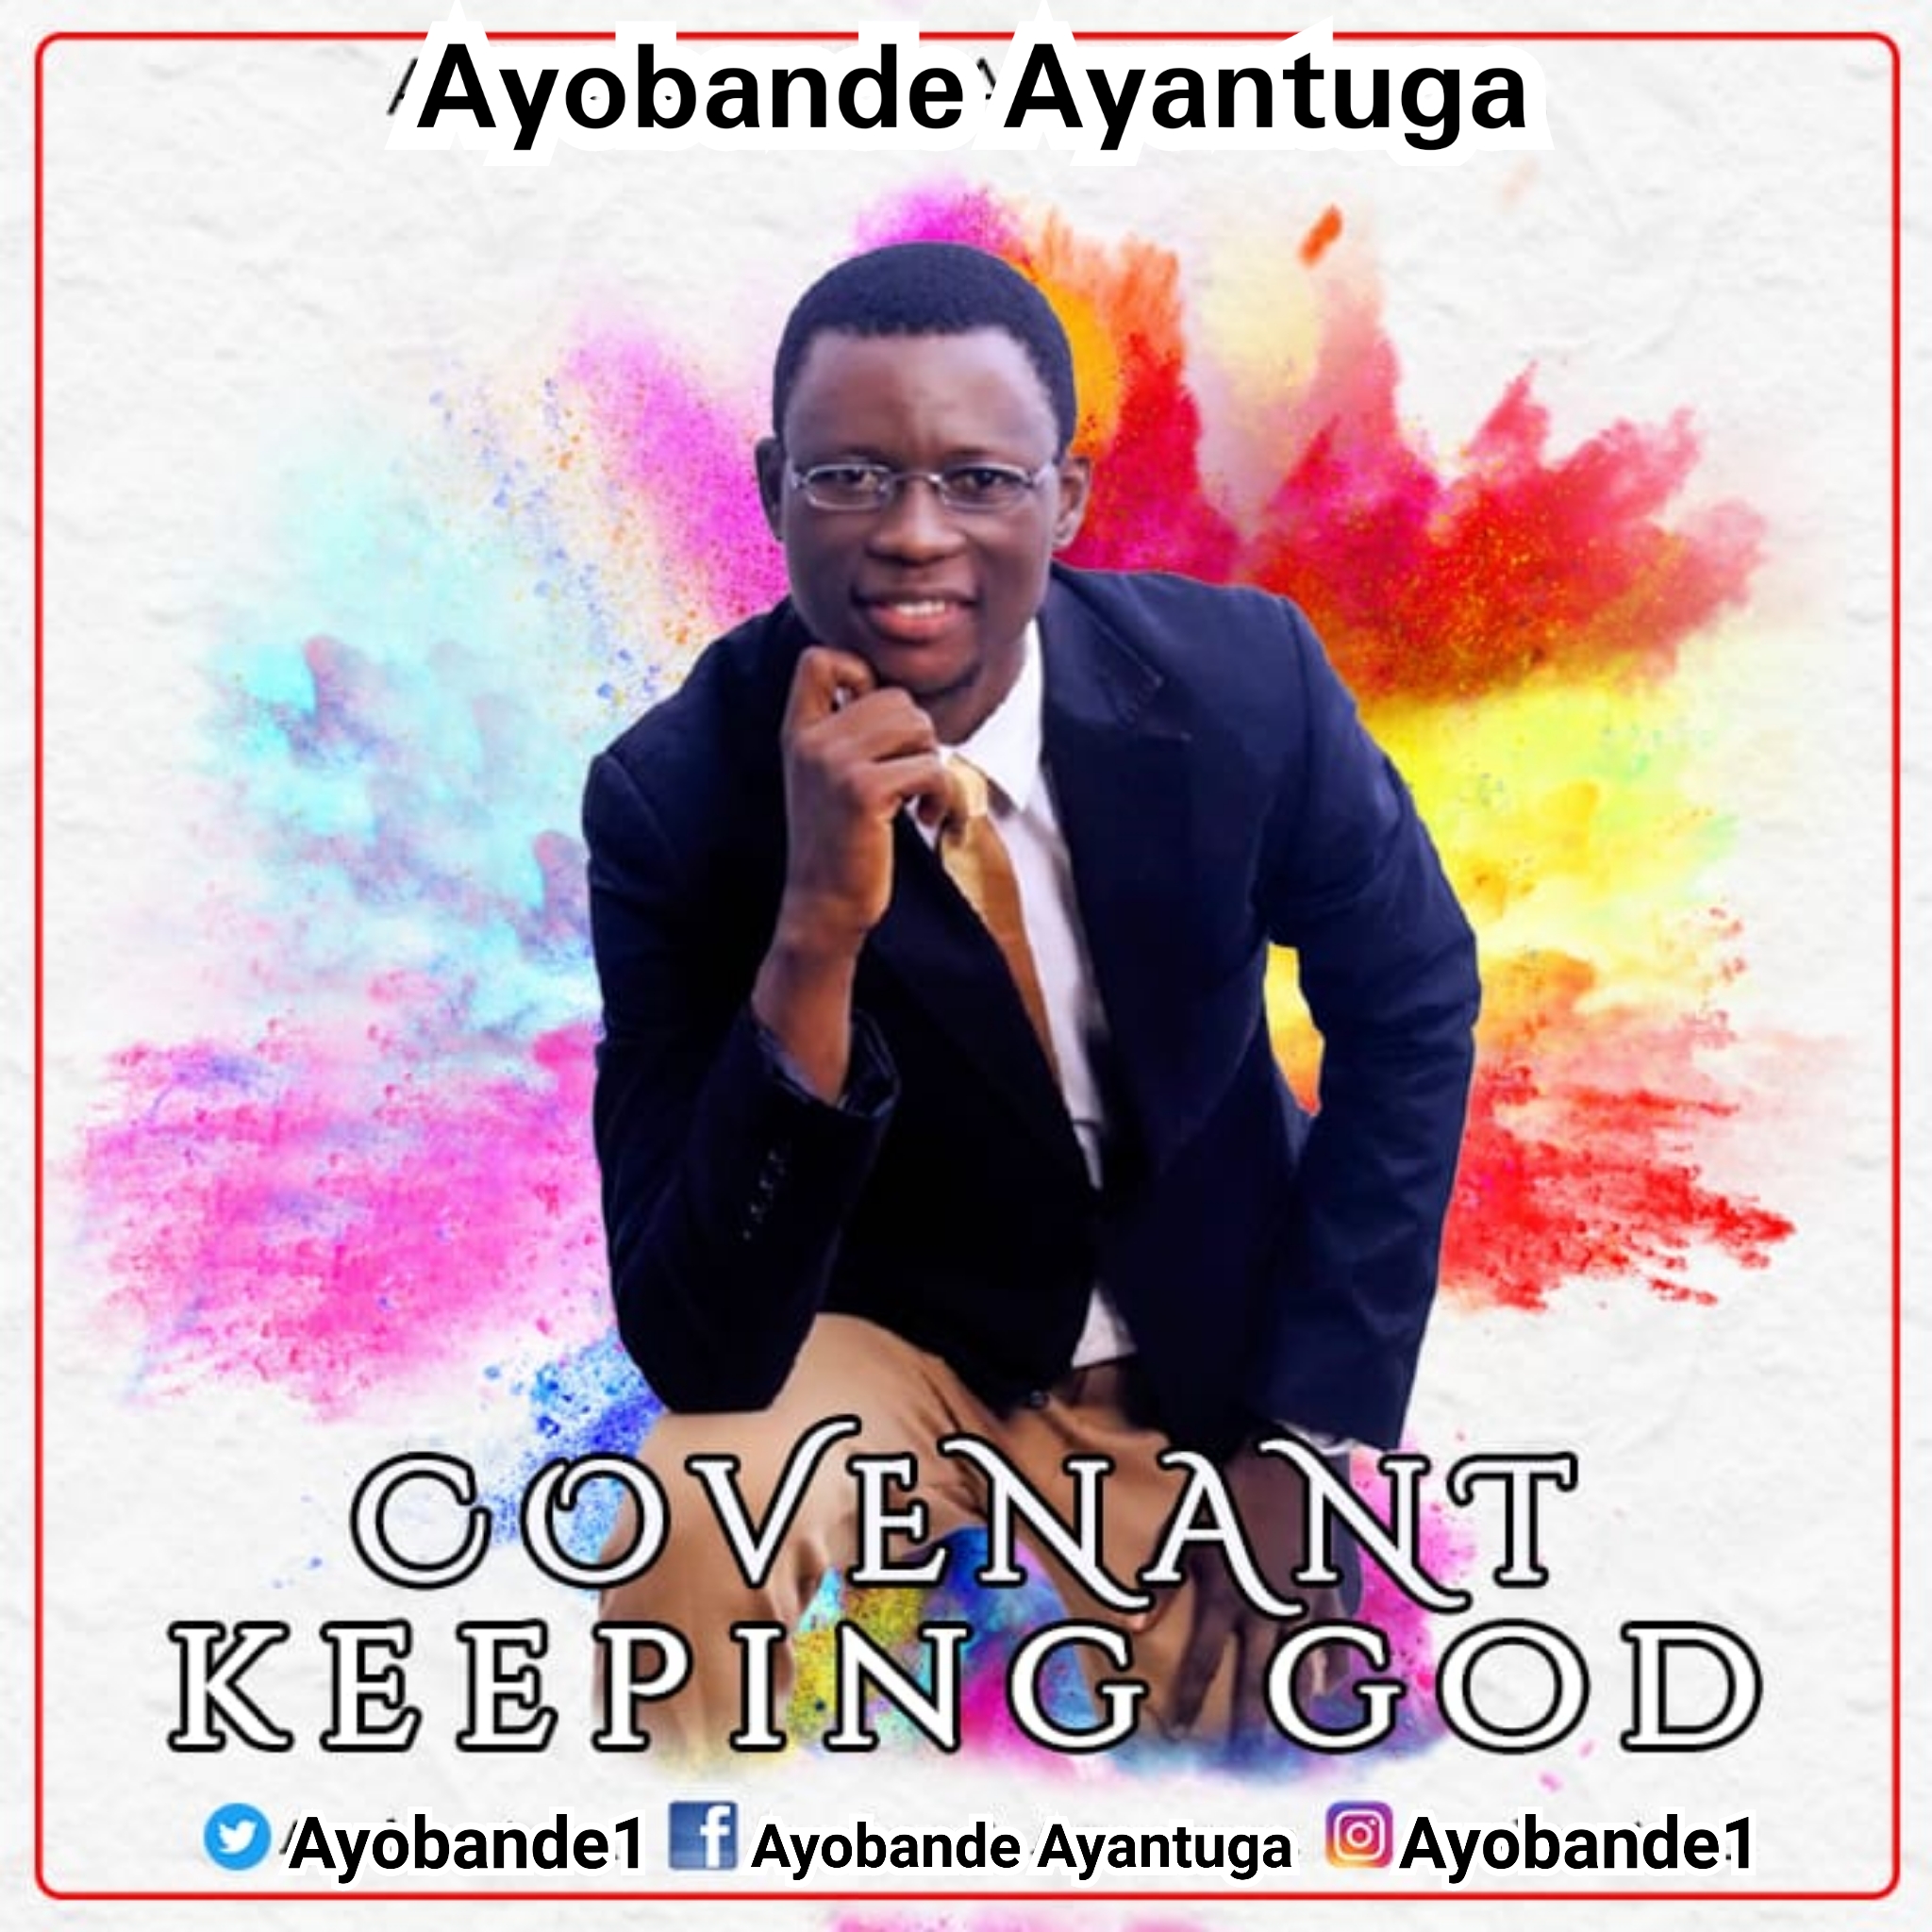 Covenant keeping God